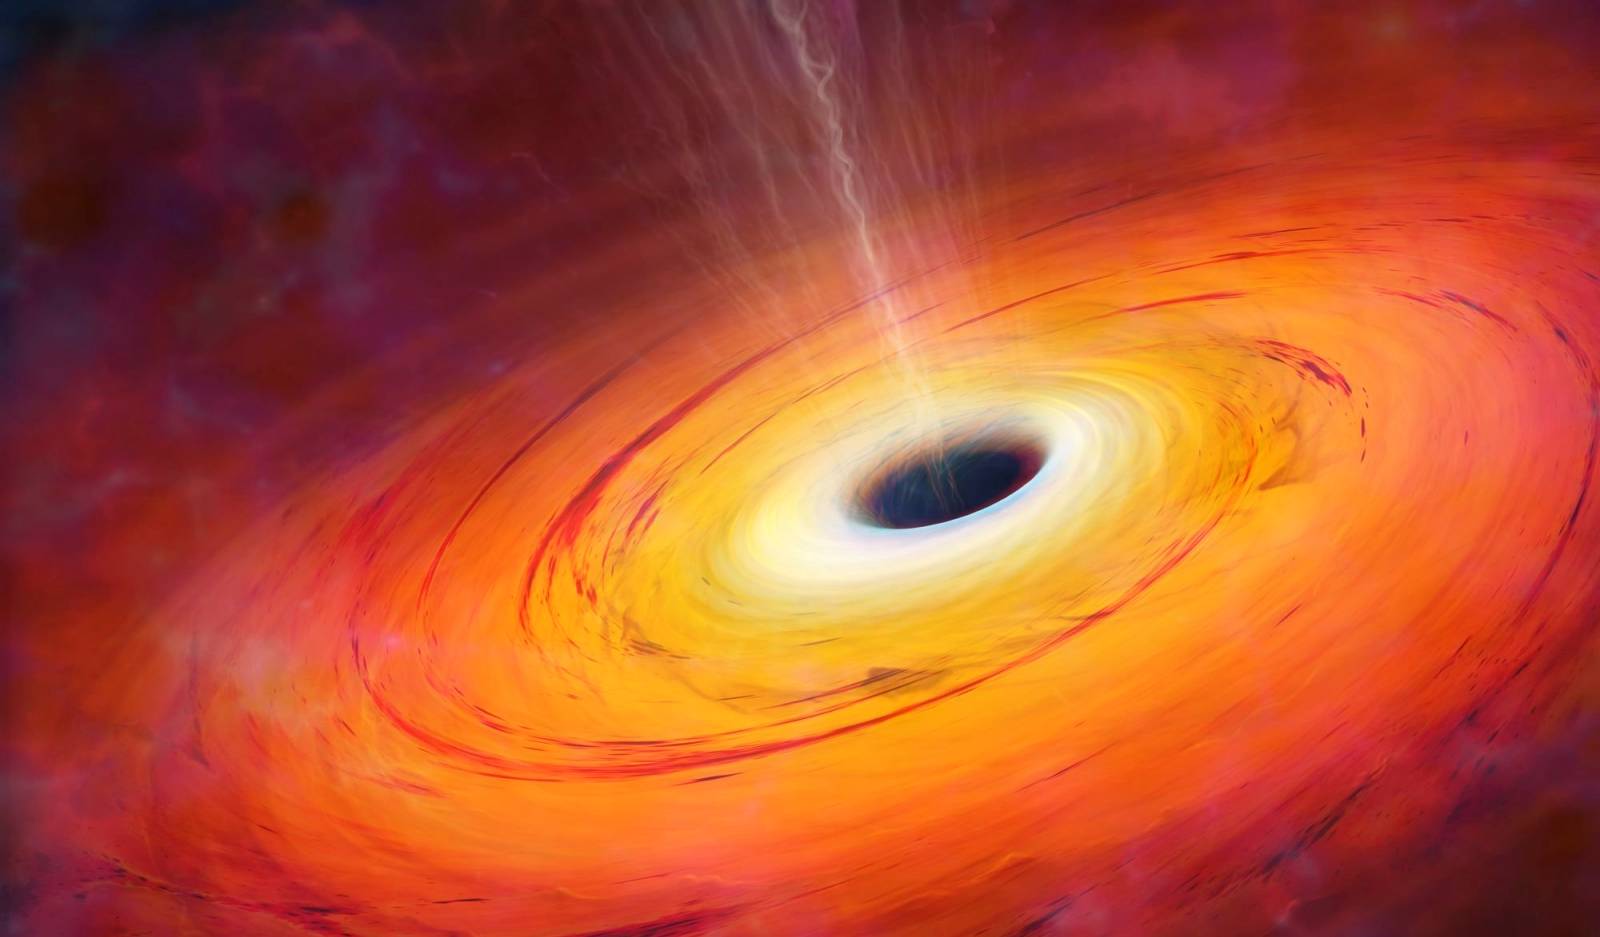 Analisi del buco nero